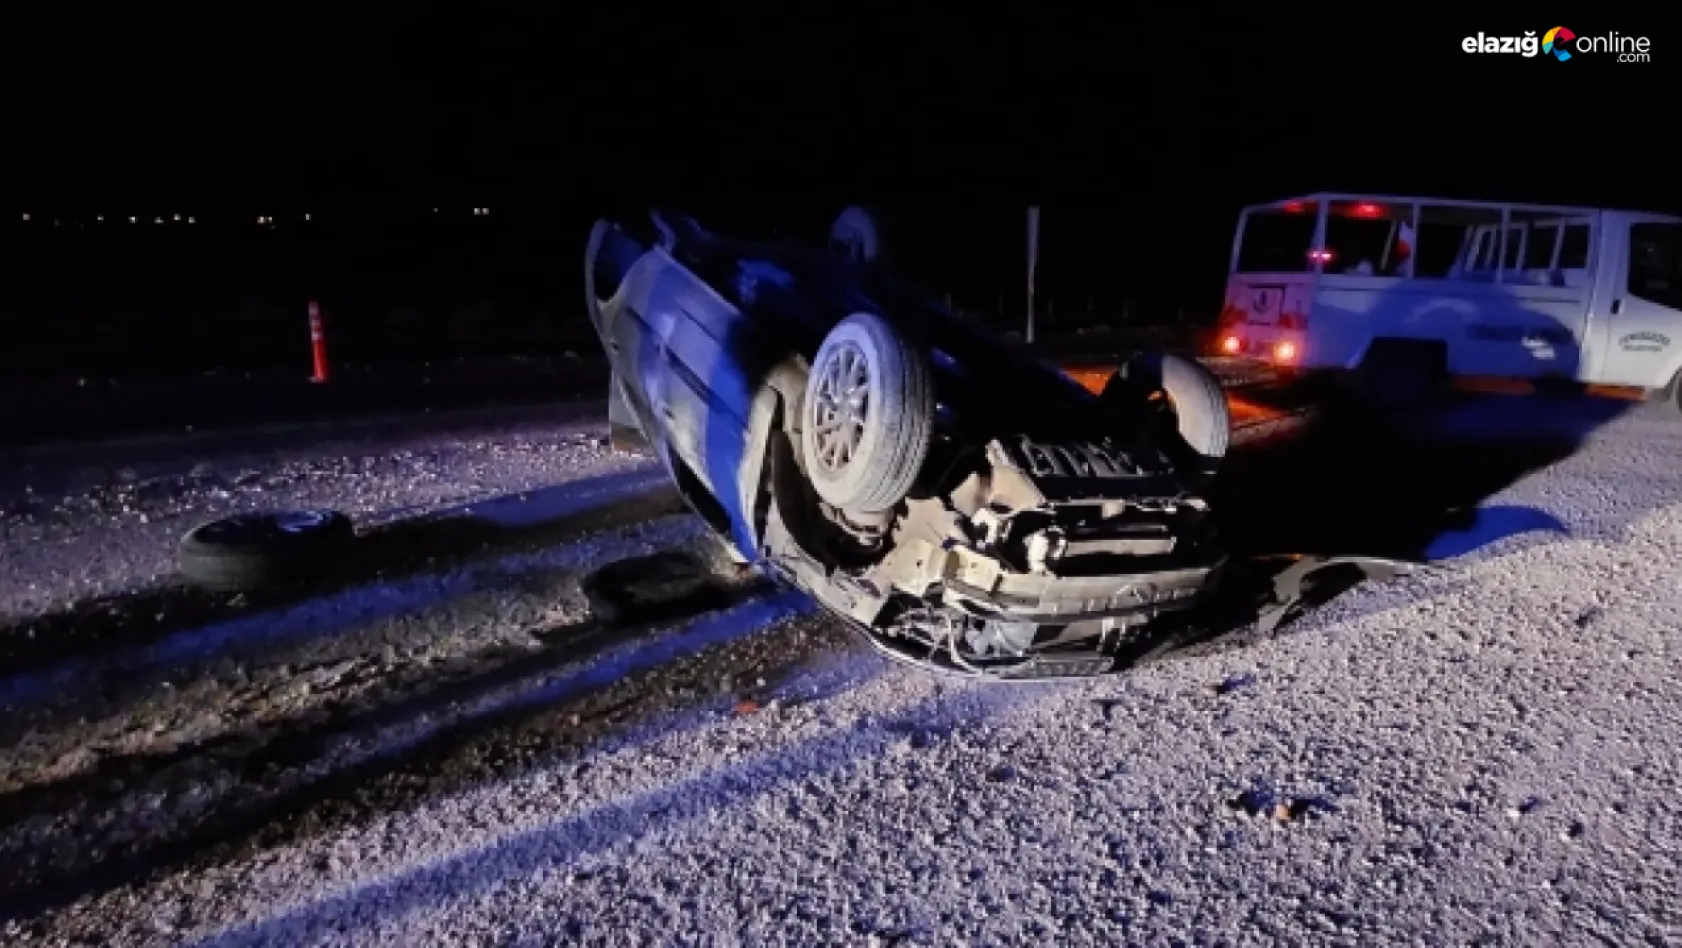 Elazığ-Pertek yolu mevkiinde kaza! Otomobil yön levhasına çarparak takla attı